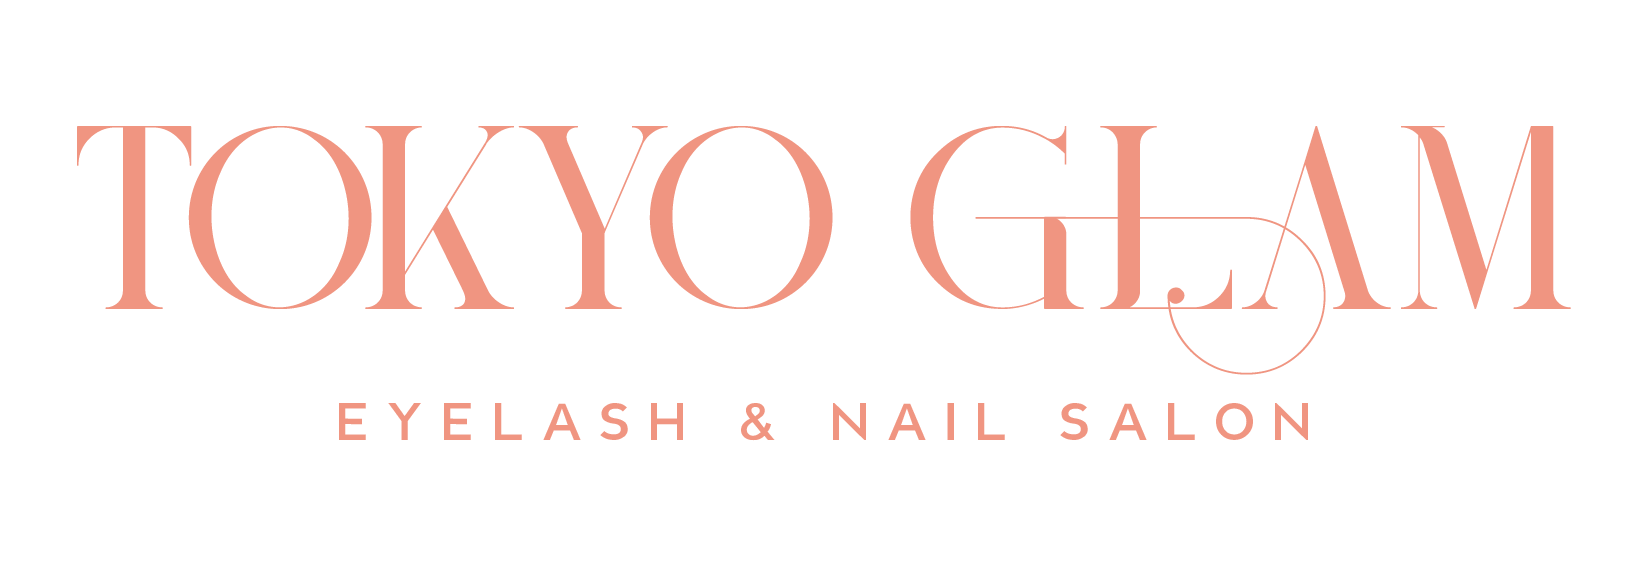 Go Glam Nail Art Premium Design I (1 unit) –